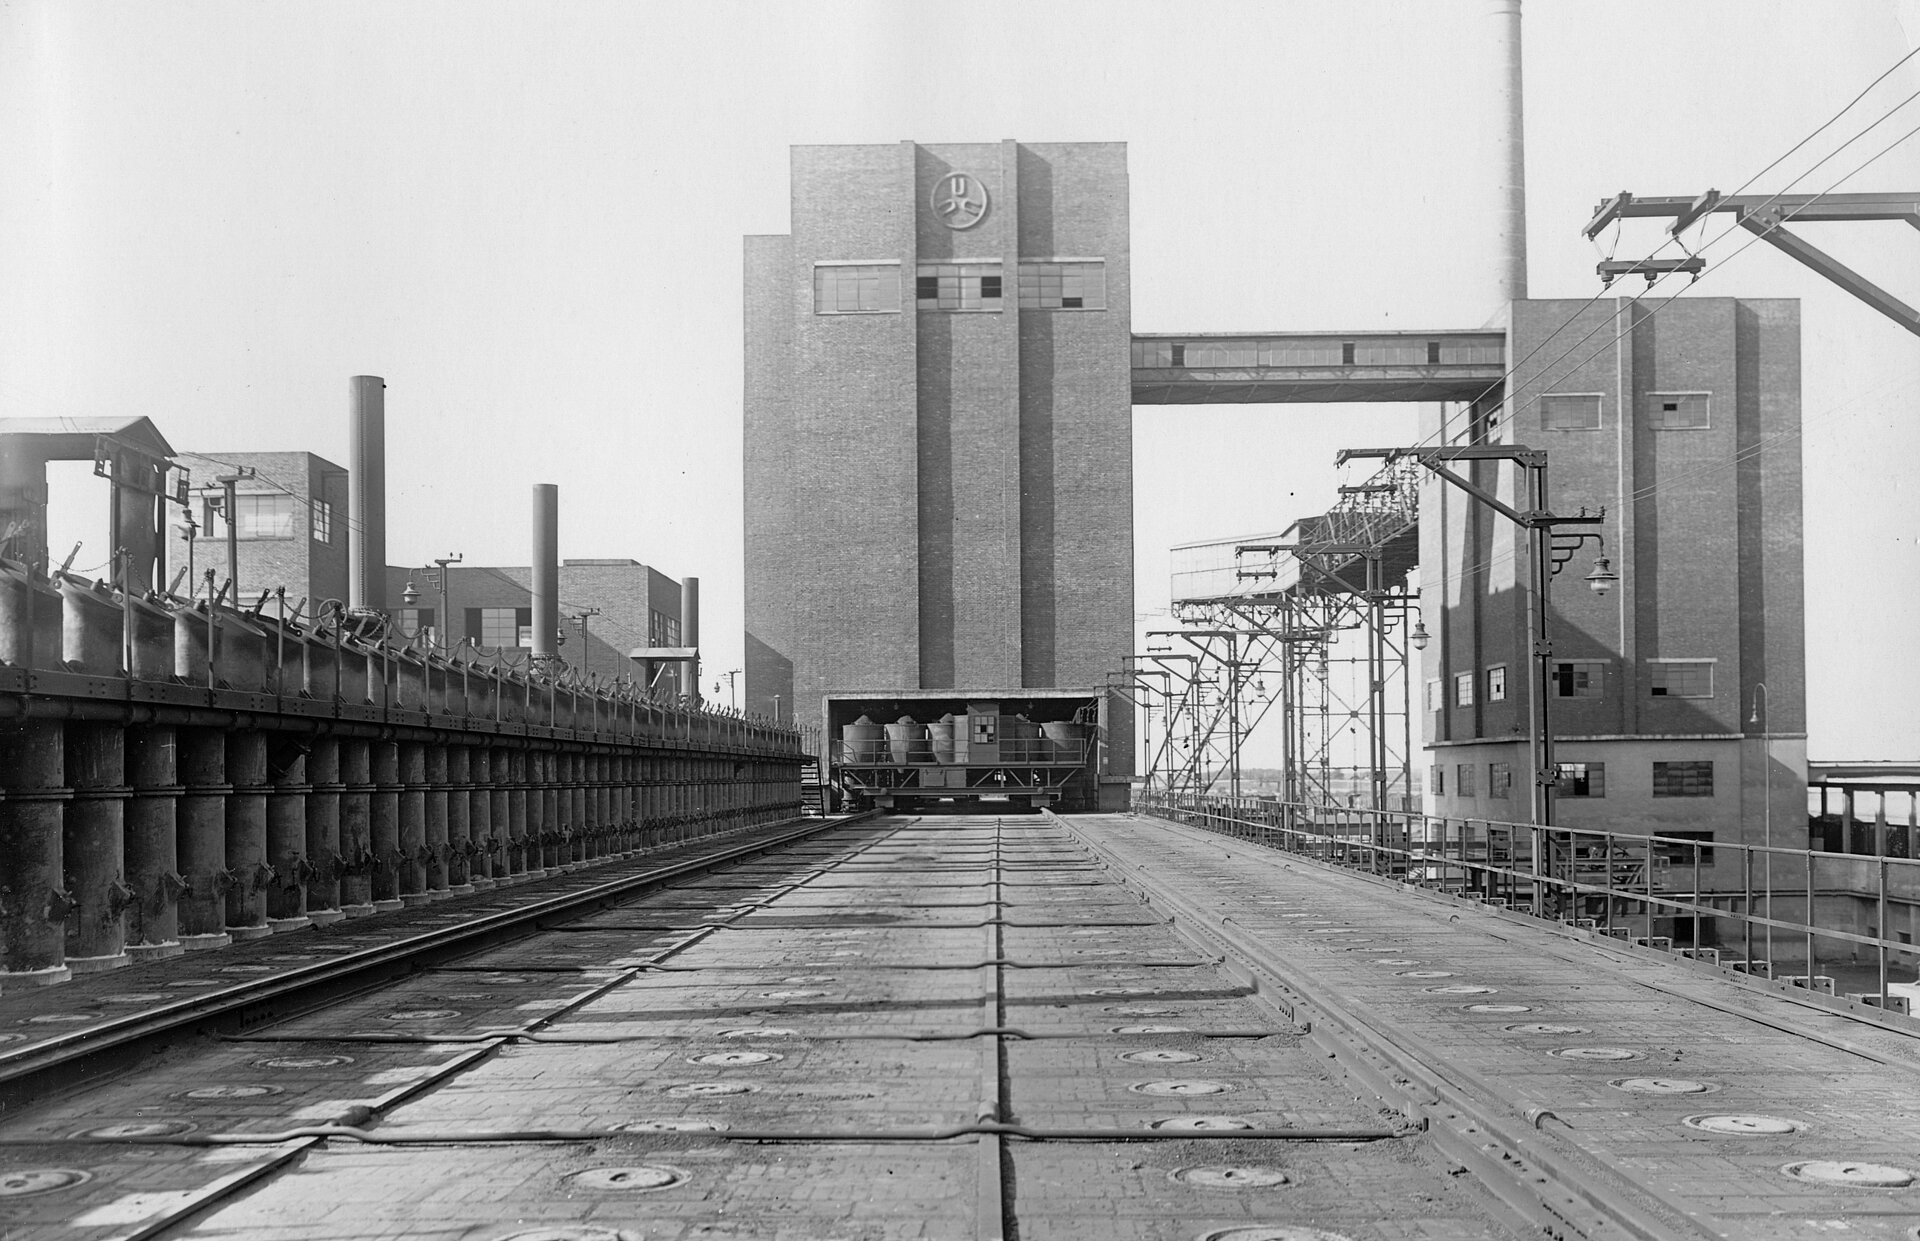 Ofendecke, Batterie Kohlenturm und Sortenturm der Kokerei Hansa in Dortmund, 1930.